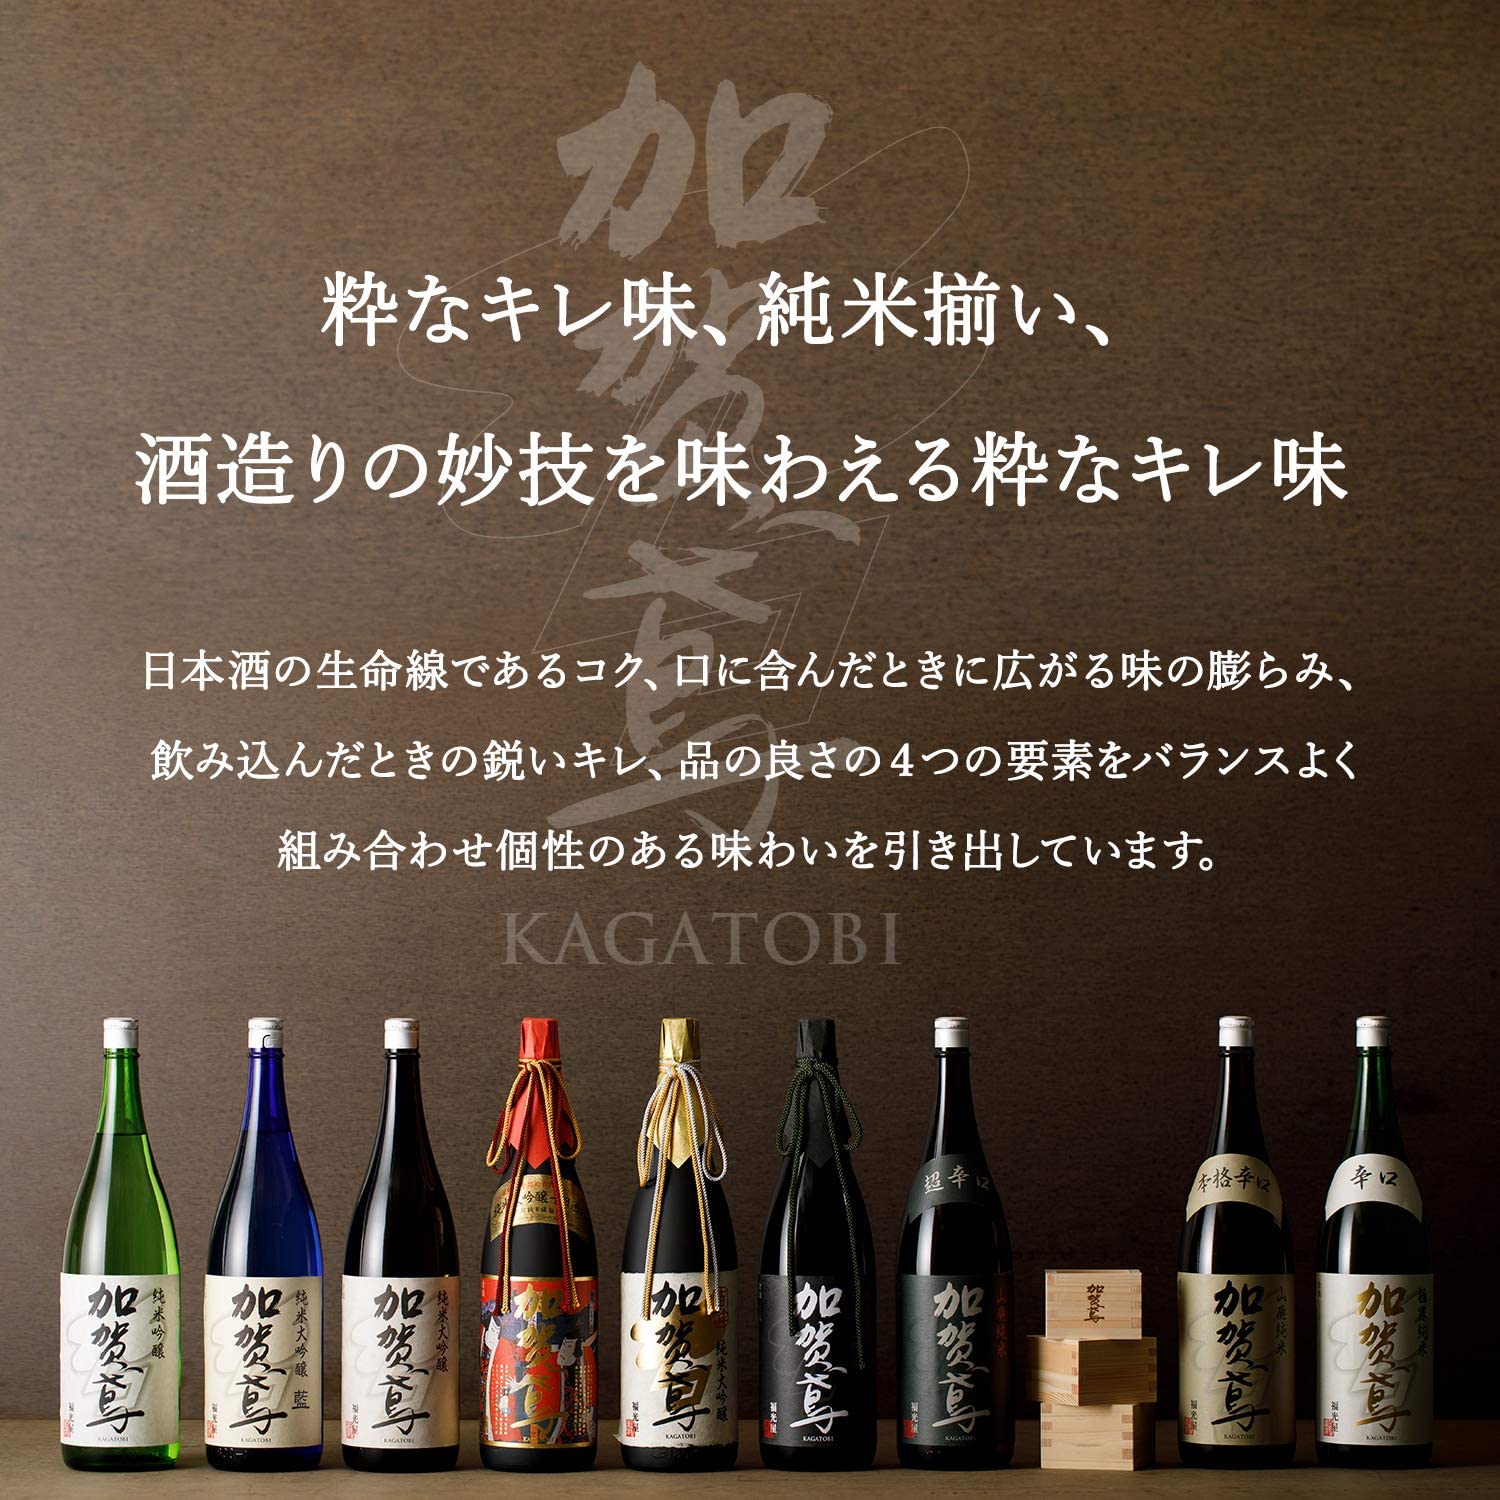 What kind of sake brand is Kaga Tobi? 加賀鳶